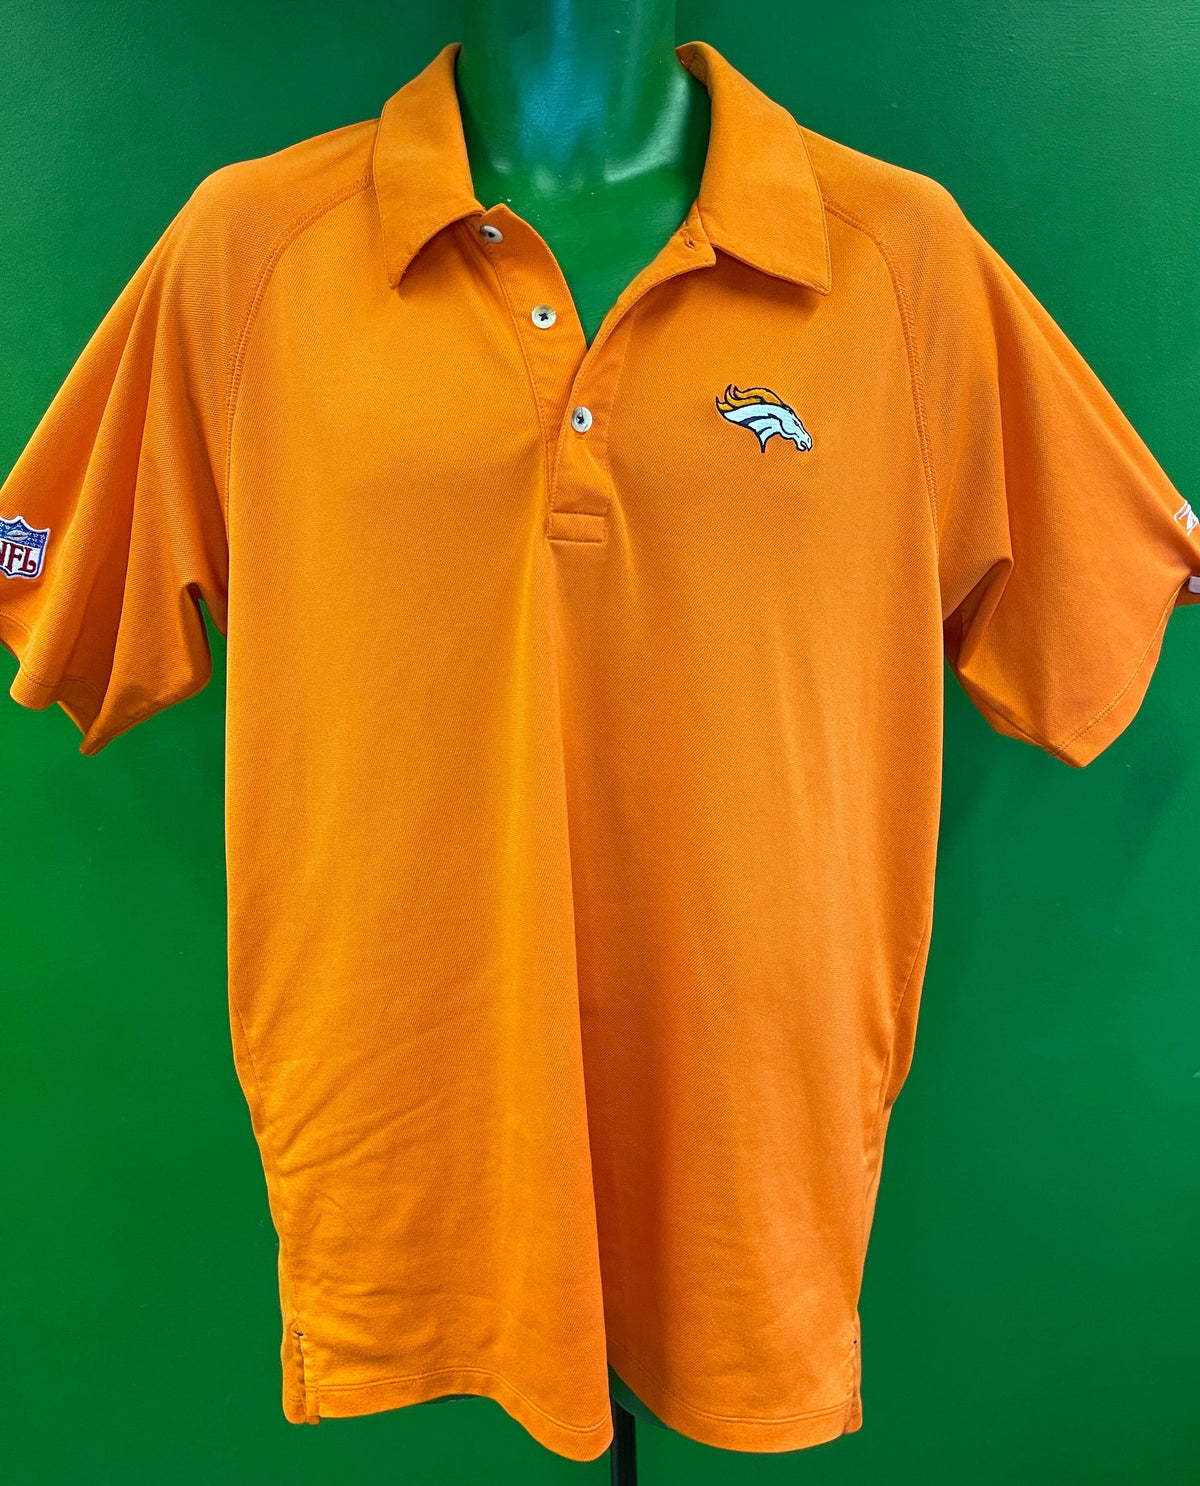 NFL Denver Broncos Lightweight Orange Golf Polo Shirt Men's Medium